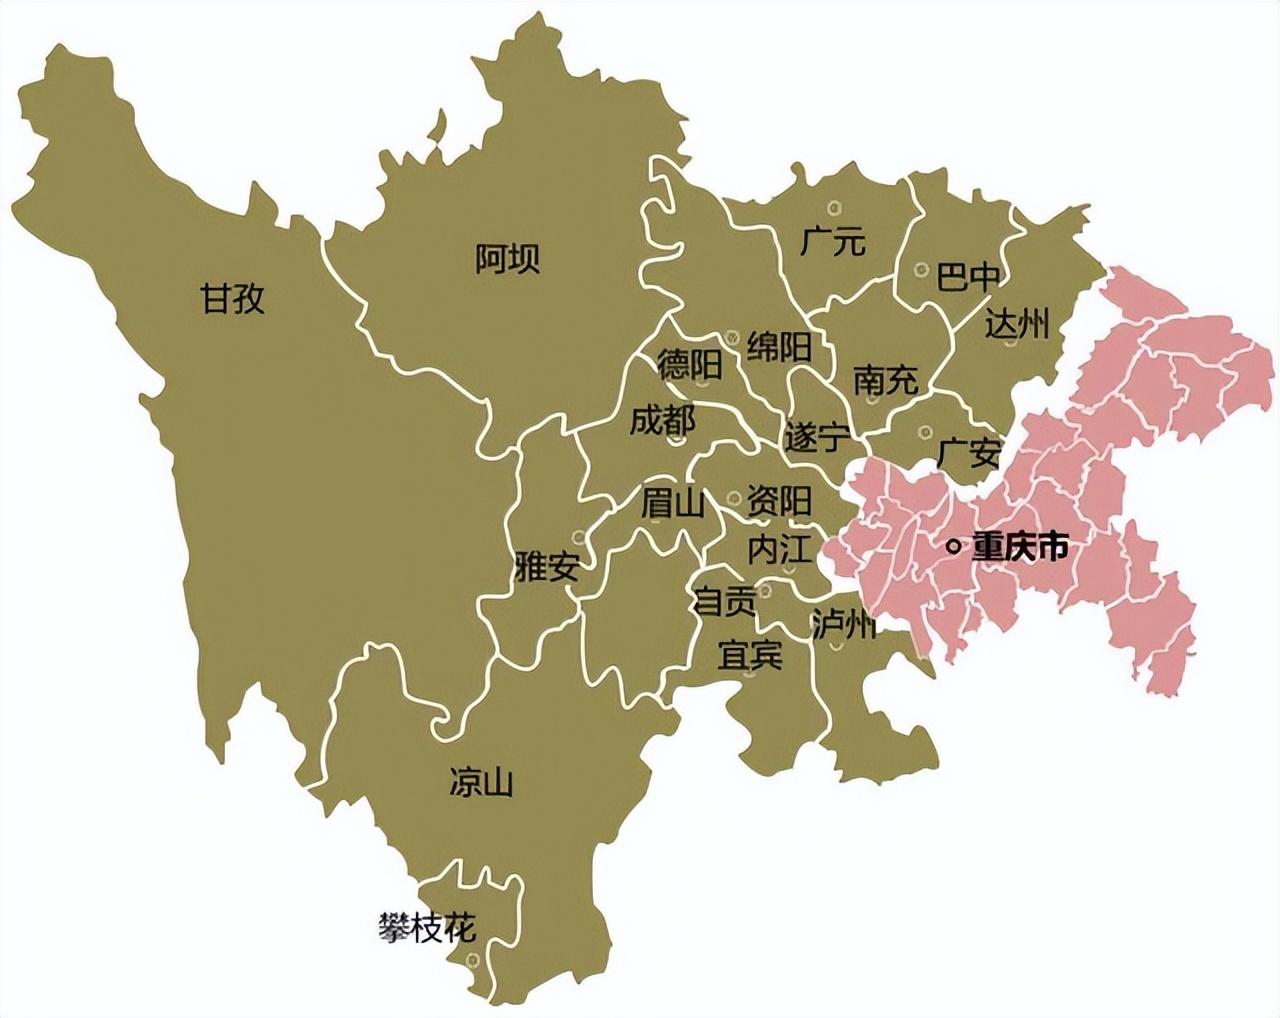 重庆市属于哪个省 重庆市现在属于哪个省